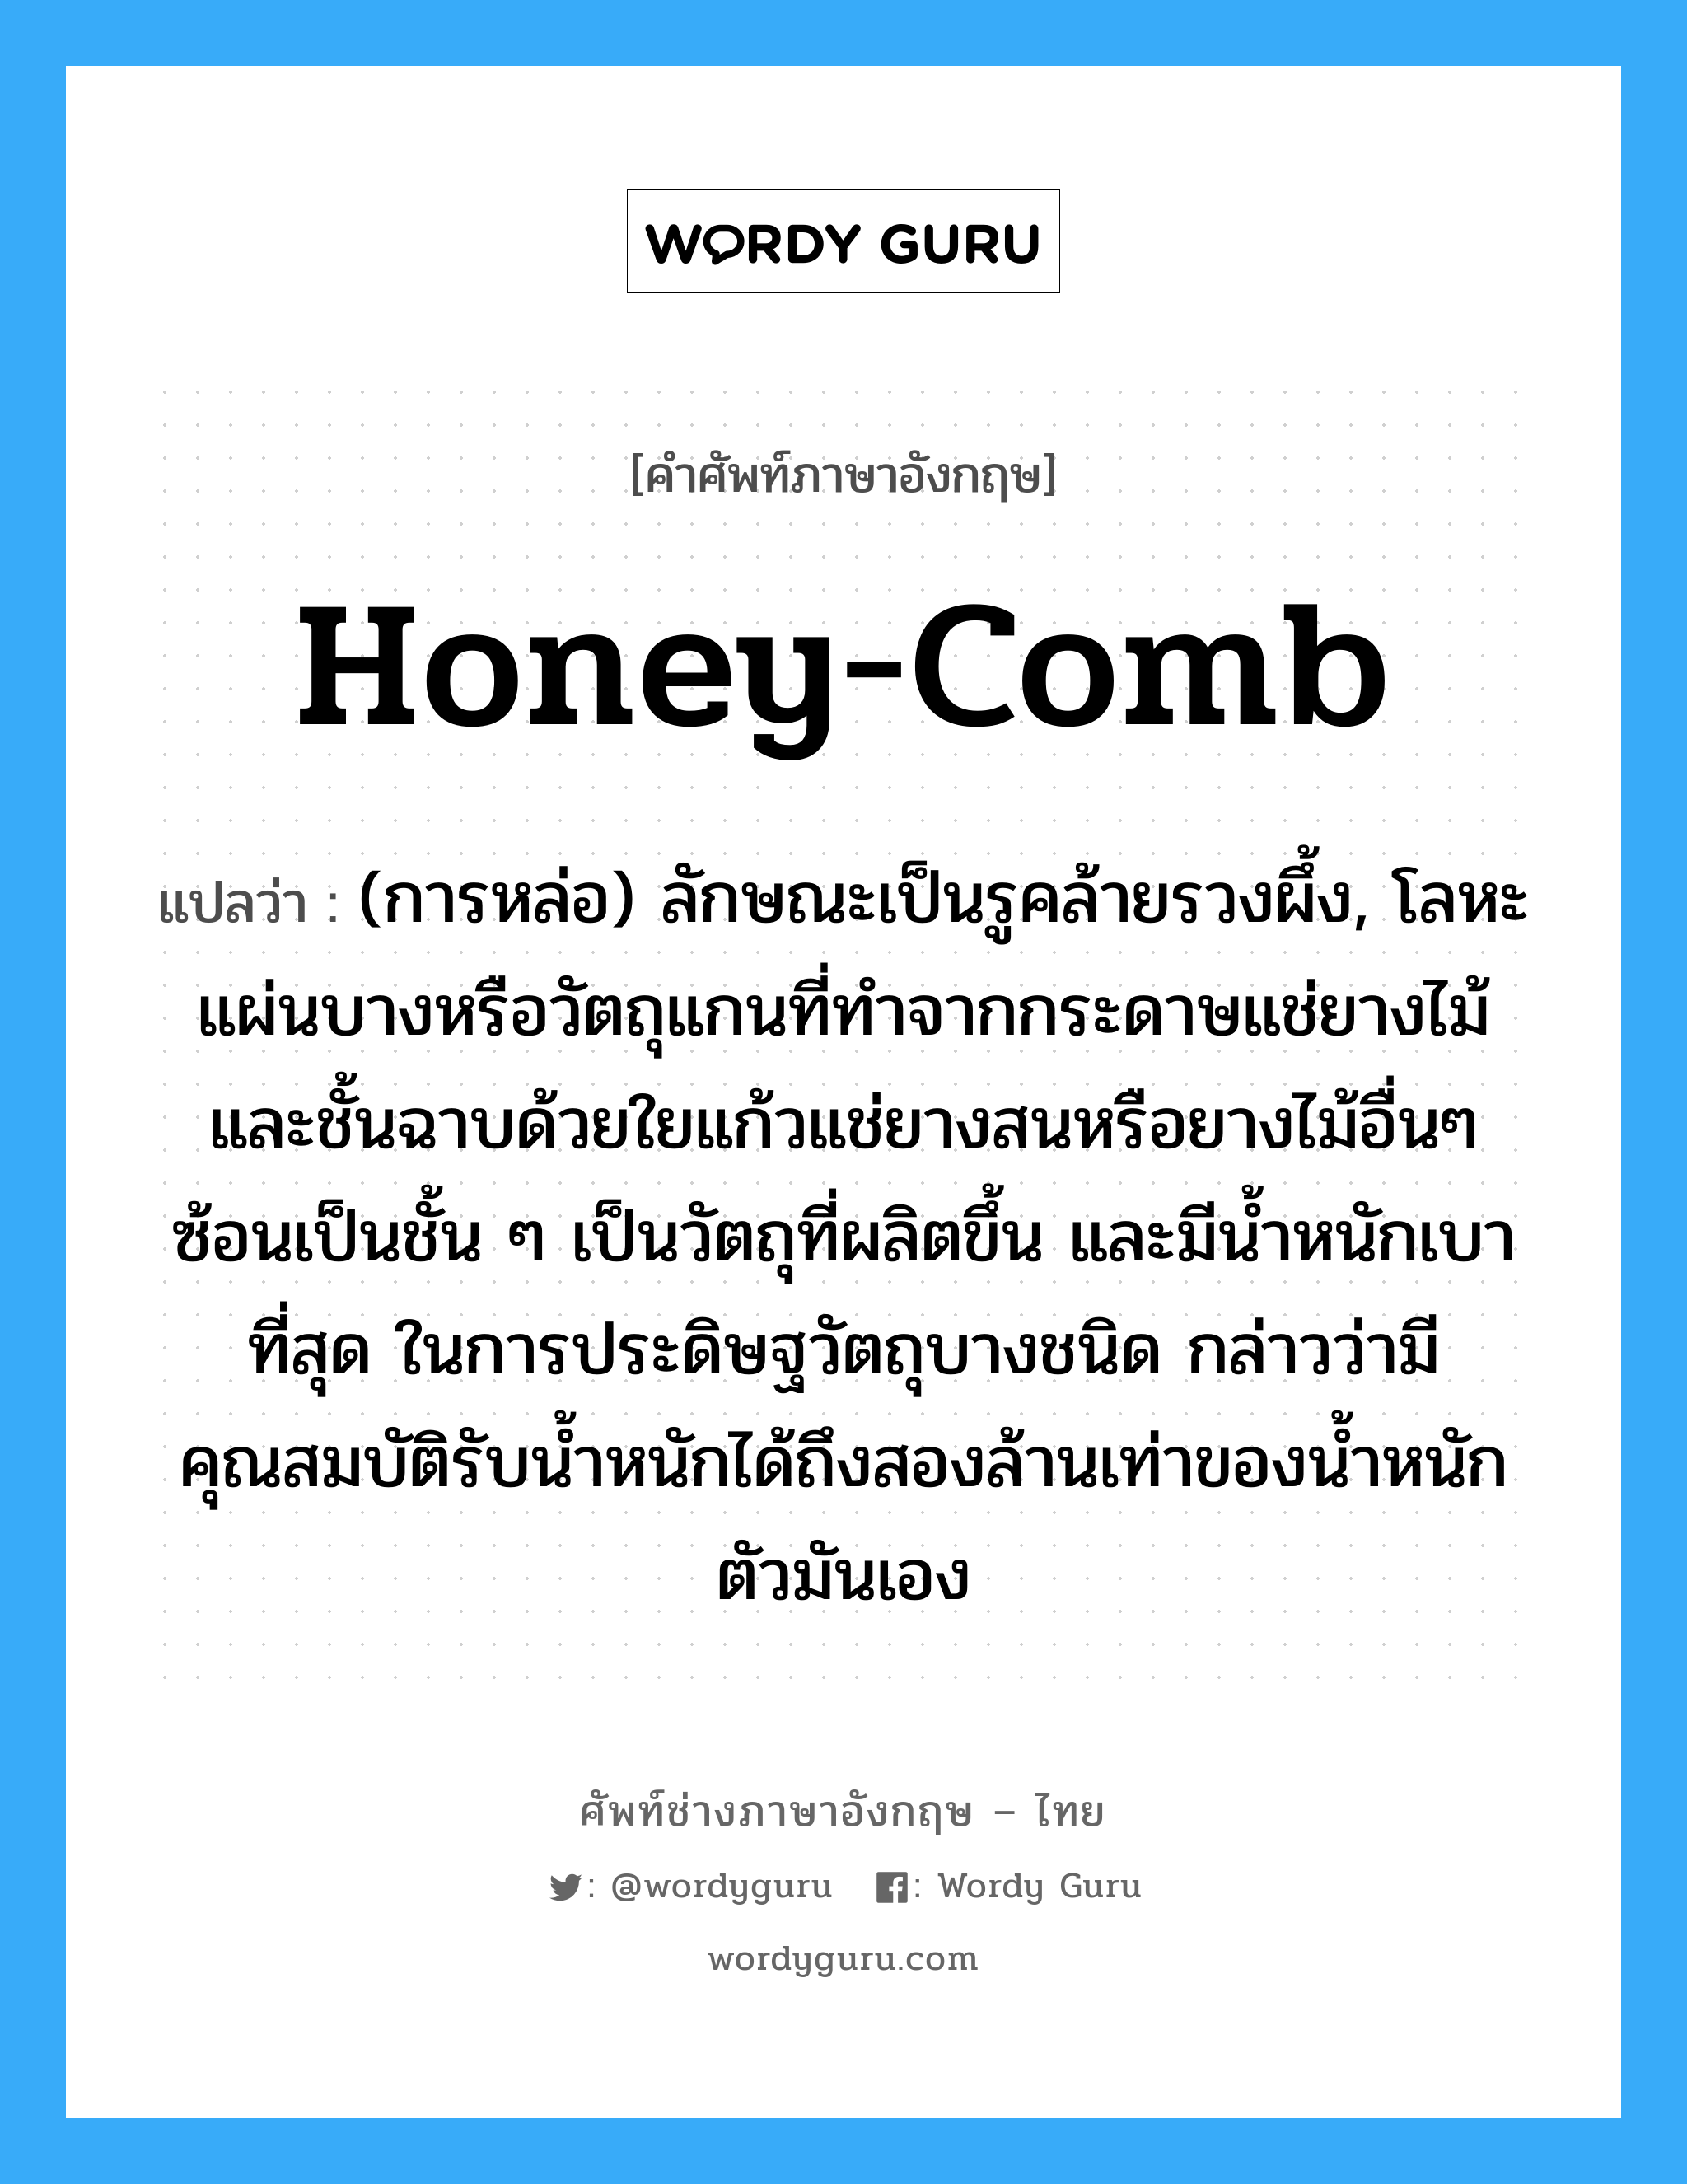 honey-comb แปลว่า?, คำศัพท์ช่างภาษาอังกฤษ - ไทย honey-comb คำศัพท์ภาษาอังกฤษ honey-comb แปลว่า (การหล่อ) ลักษณะเป็นรูคล้ายรวงผึ้ง, โลหะแผ่นบางหรือวัตถุแกนที่ทำจากกระดาษแช่ยางไม้ และชั้นฉาบด้วยใยแก้วแช่ยางสนหรือยางไม้อื่นๆ ซ้อนเป็นชั้น ๆ เป็นวัตถุที่ผลิตขึ้น และมีน้ำหนักเบาที่สุด ในการประดิษฐวัตถุบางชนิด กล่าวว่ามีคุณสมบัติรับน้ำหนักได้ถึงสองล้านเท่าของน้ำหนักตัวมันเอง